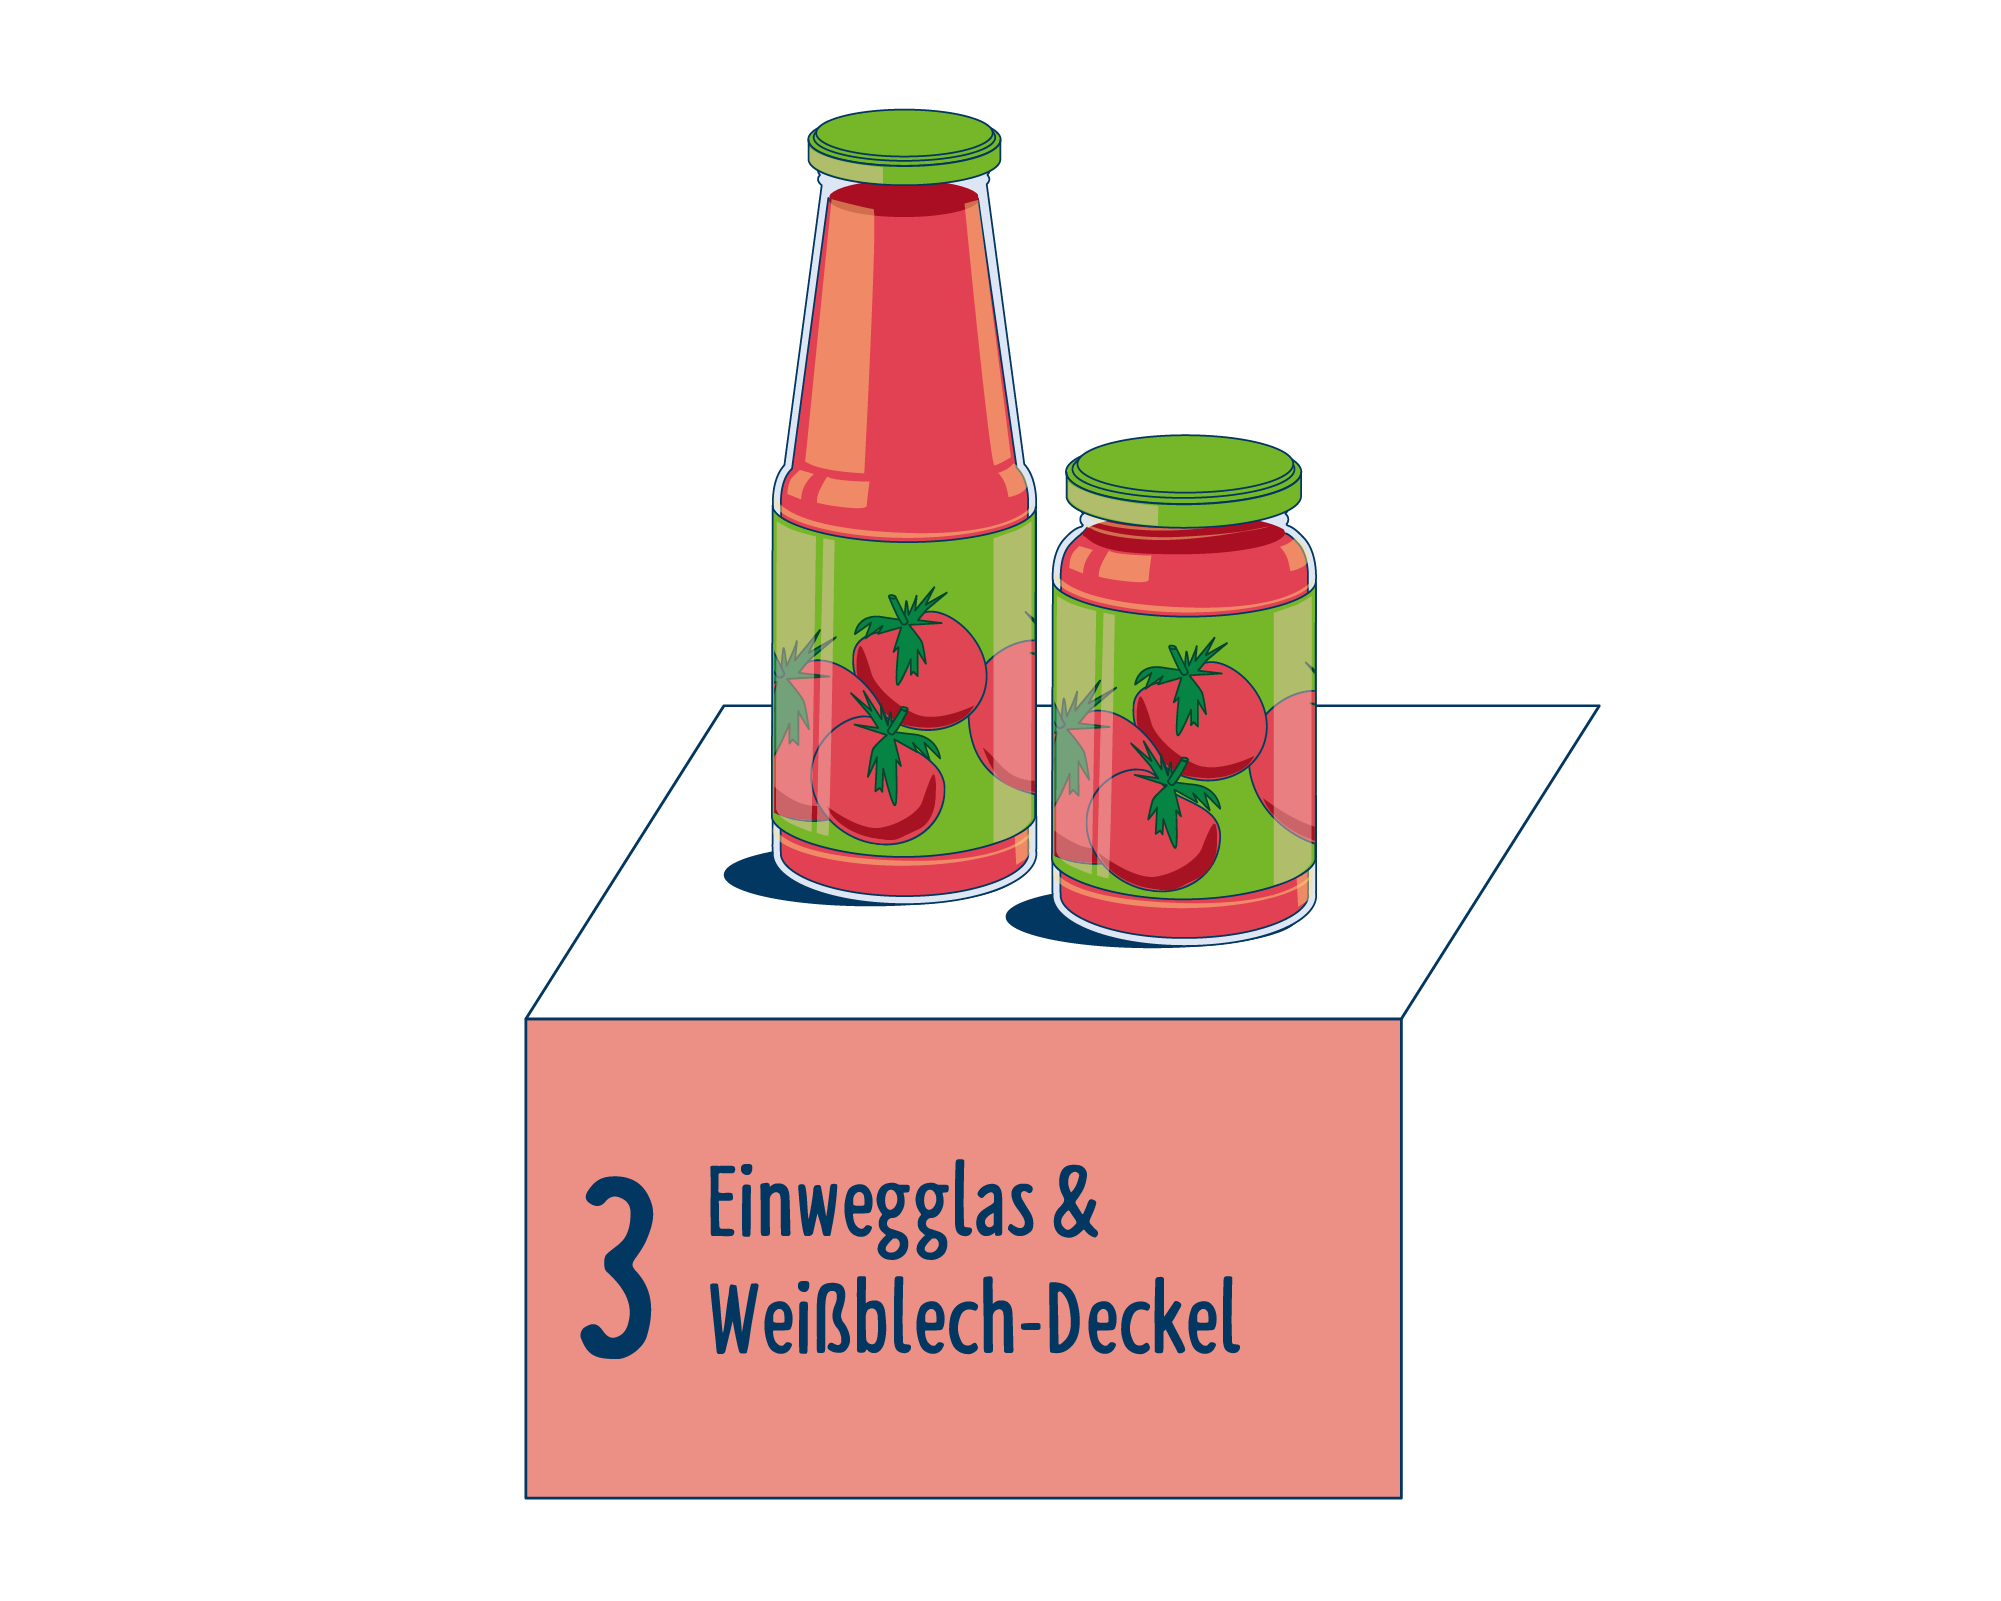 Bild Produktverpackung von Verarbeitete Tomaten eingeordnet auf Platz 3, bestehend aus Einwegglas & Weißblech-Deckel.